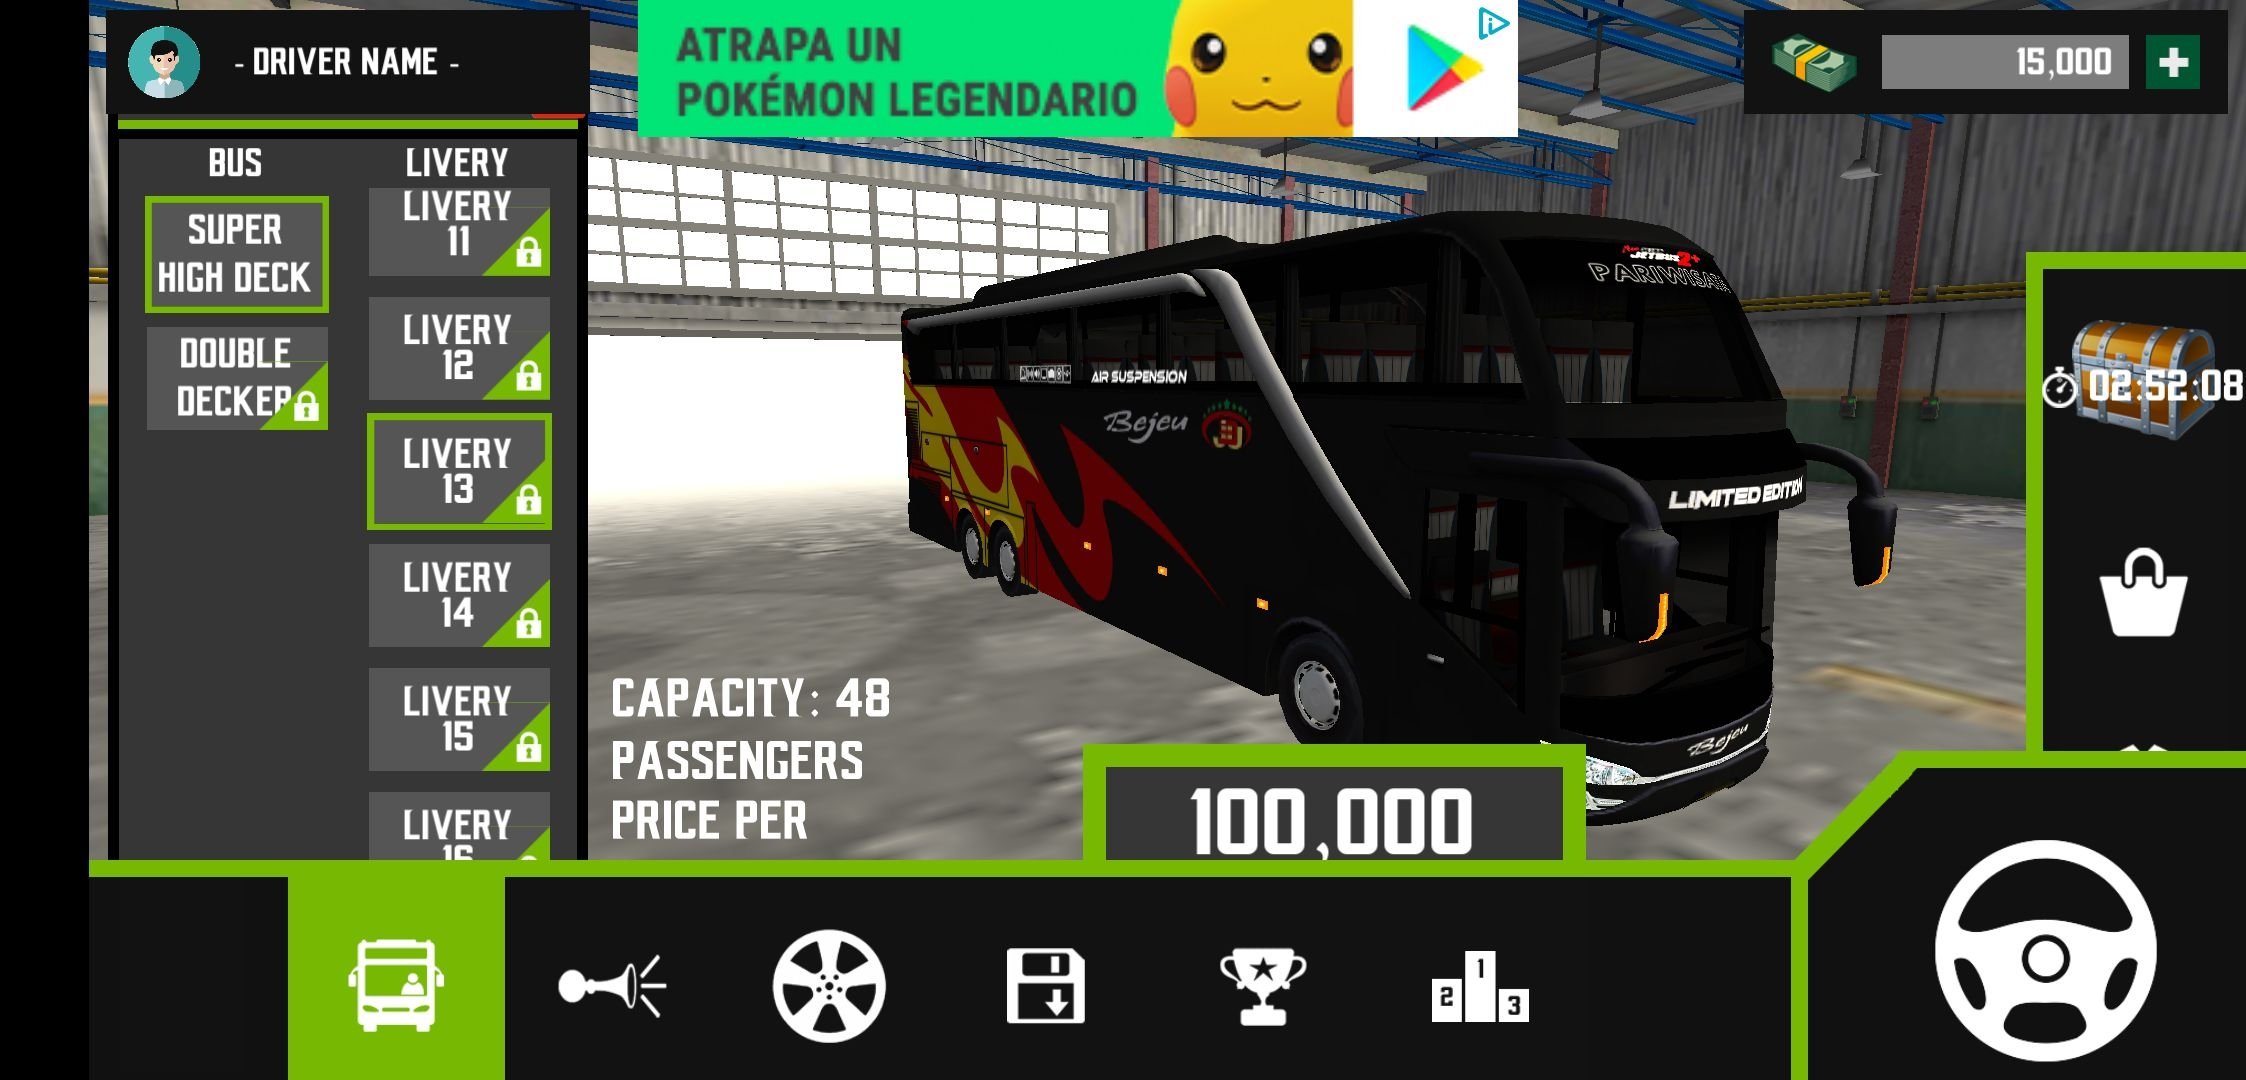 game bus simulator indonesia online